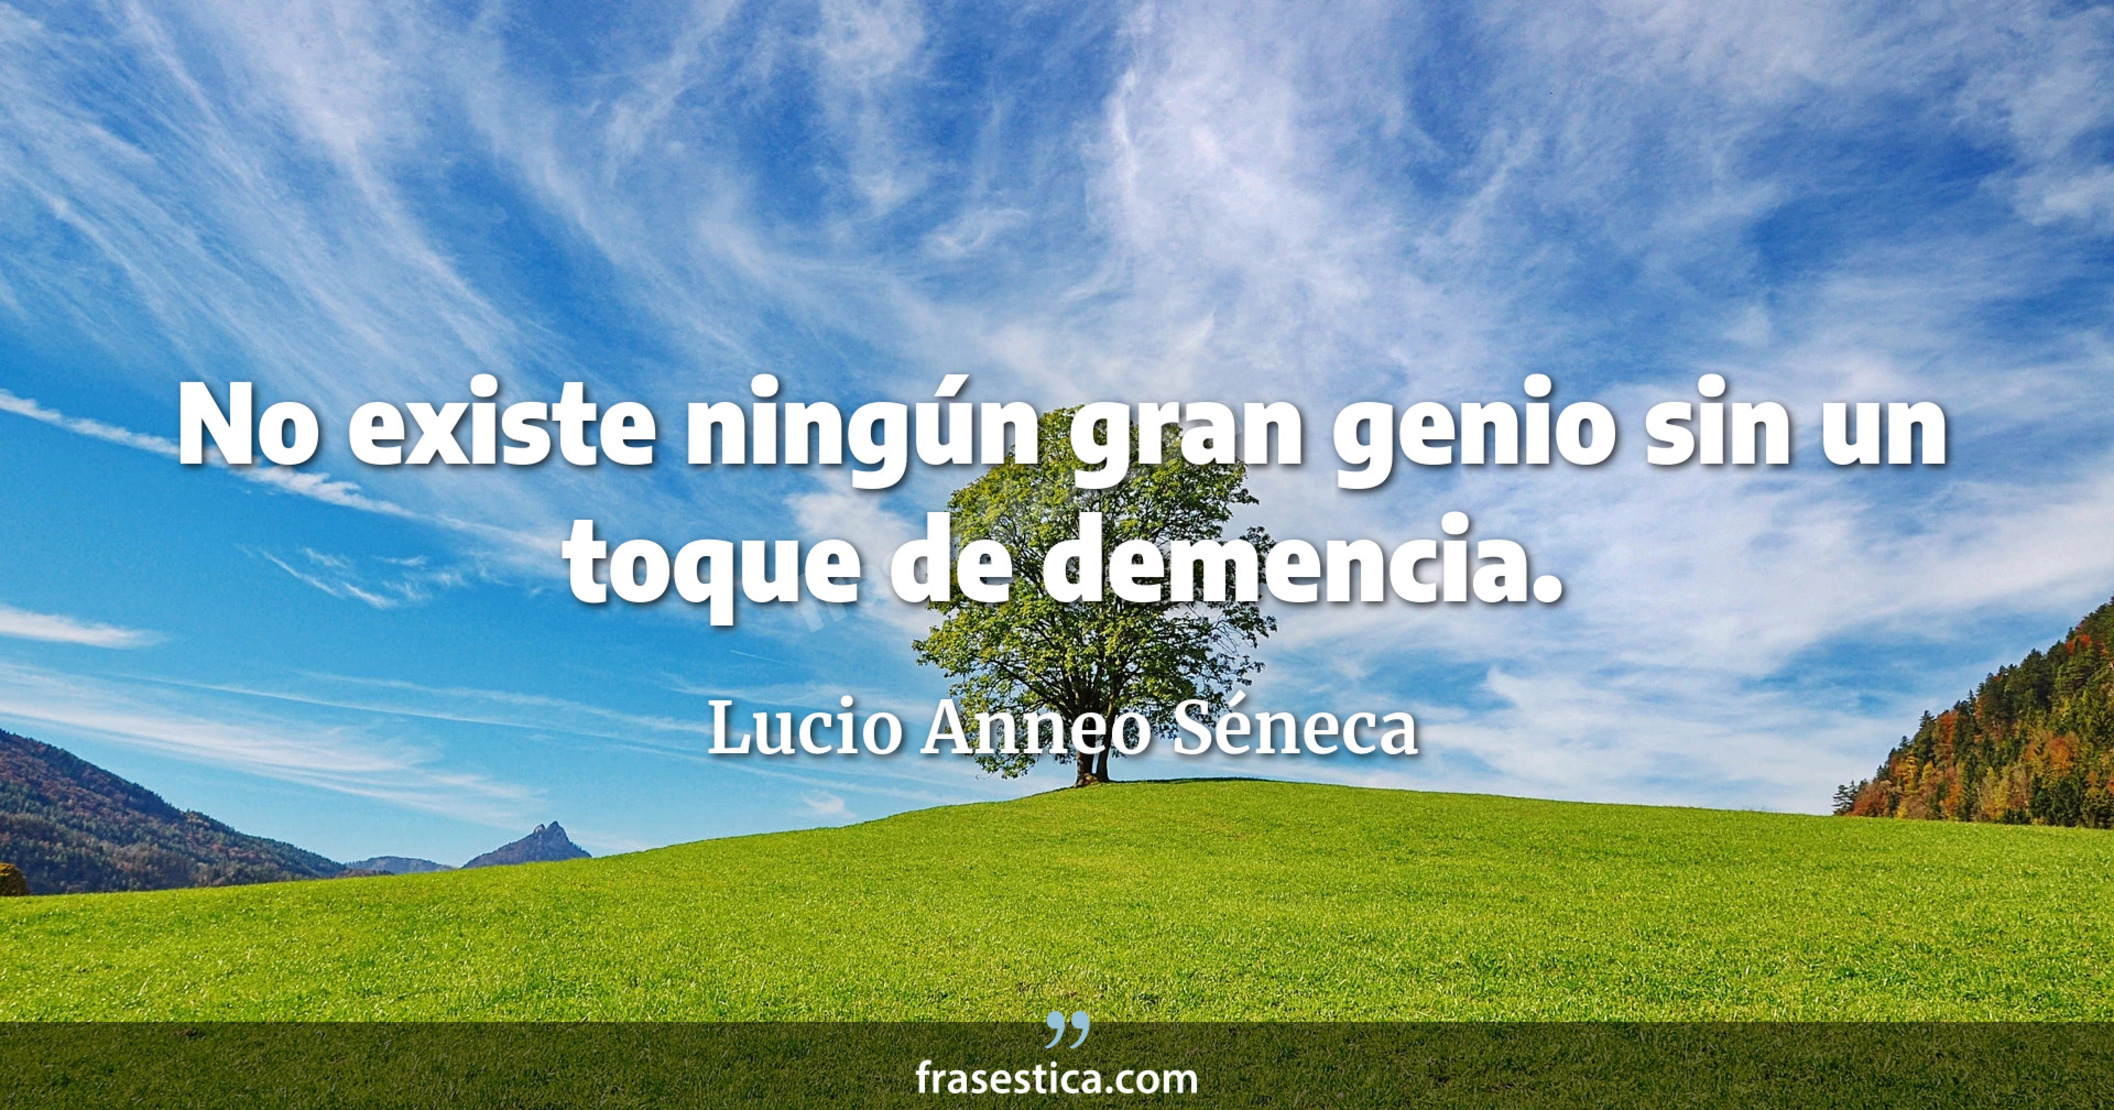 No existe ningún gran genio sin un toque de demencia. - Lucio Anneo Séneca